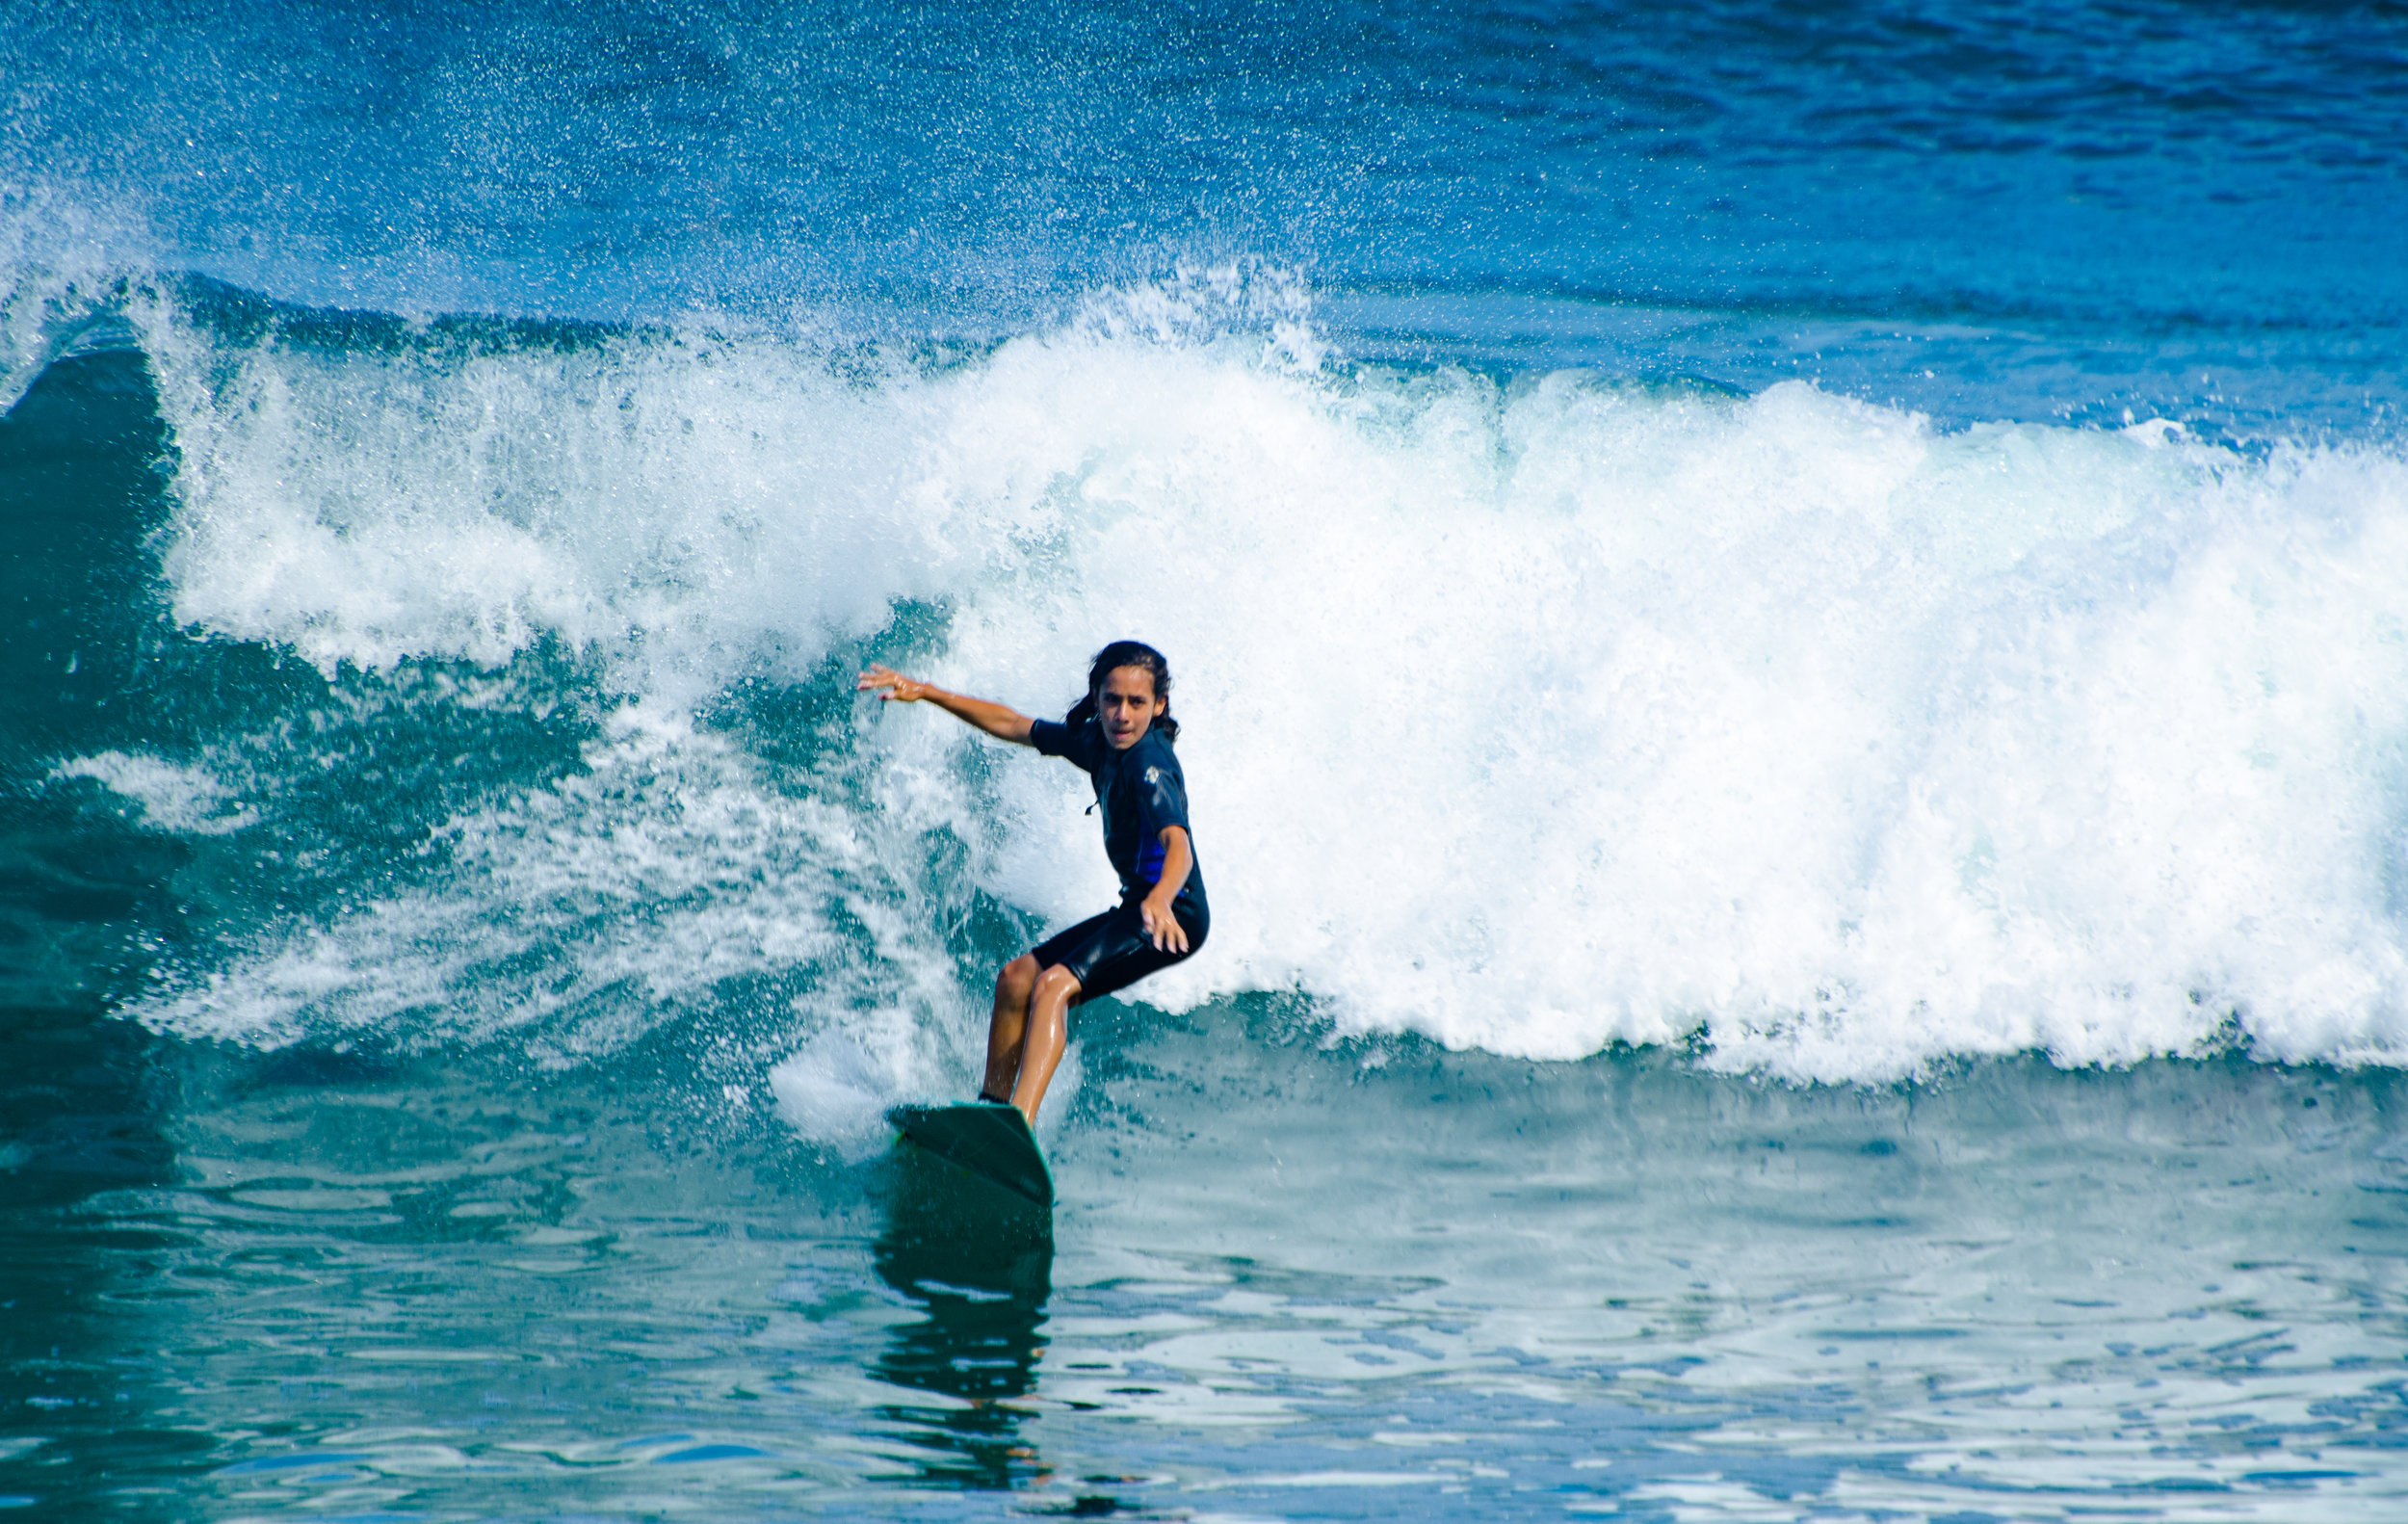 Will Ben surfing-4.jpg